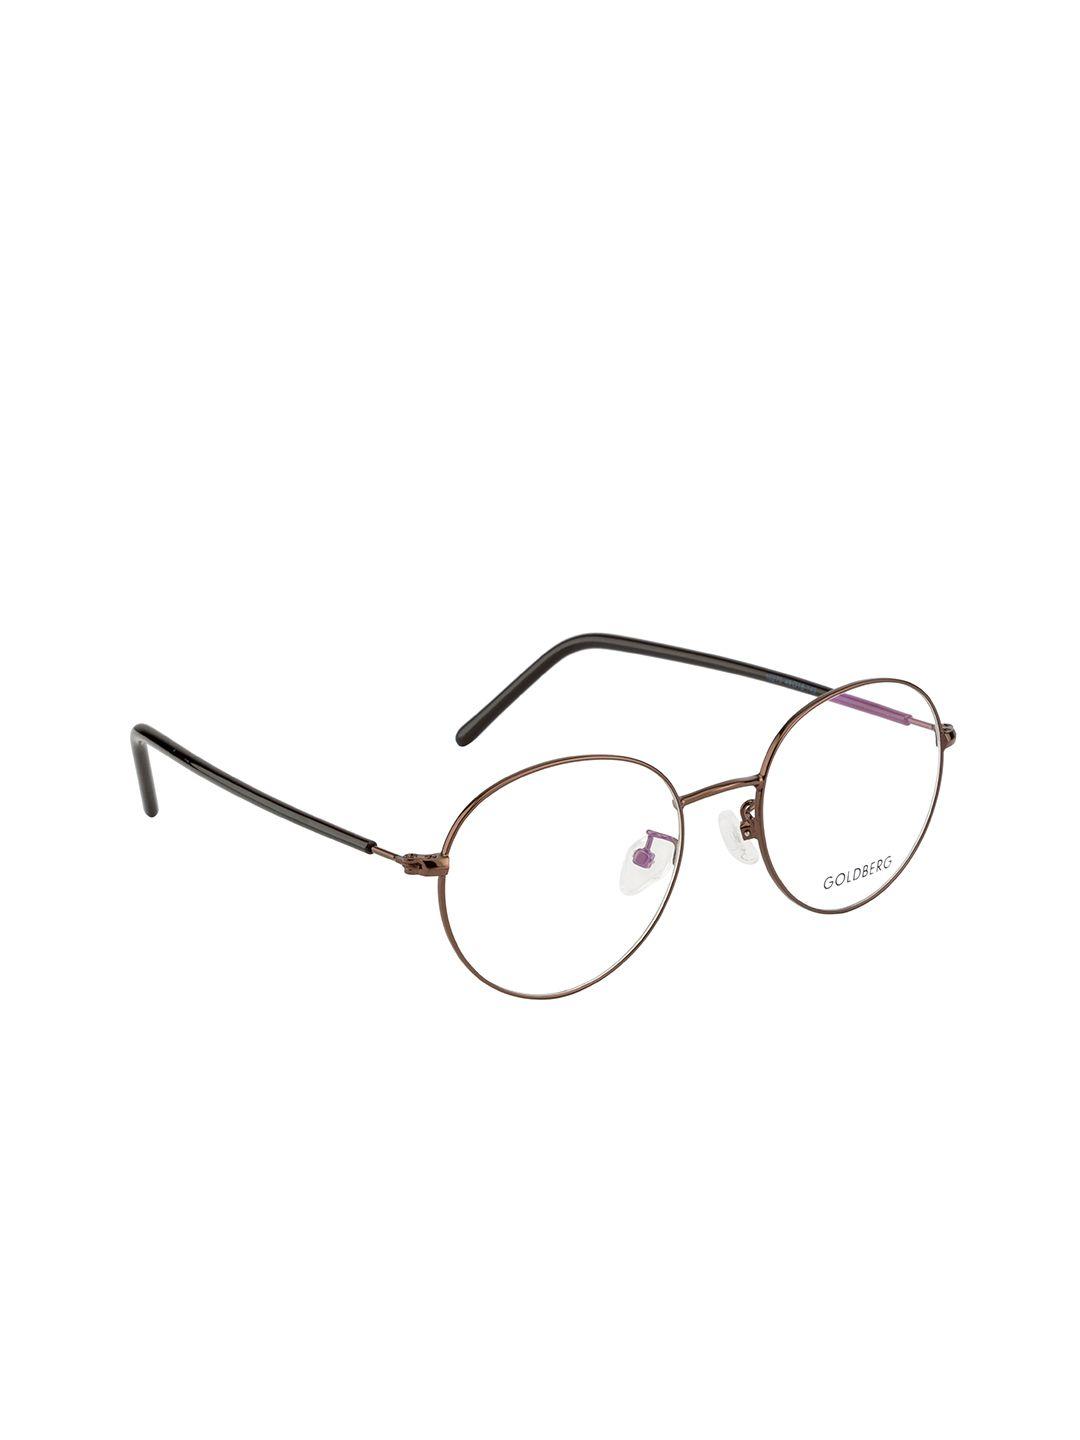 gold berg brown & white full rim round frames eyeglasses